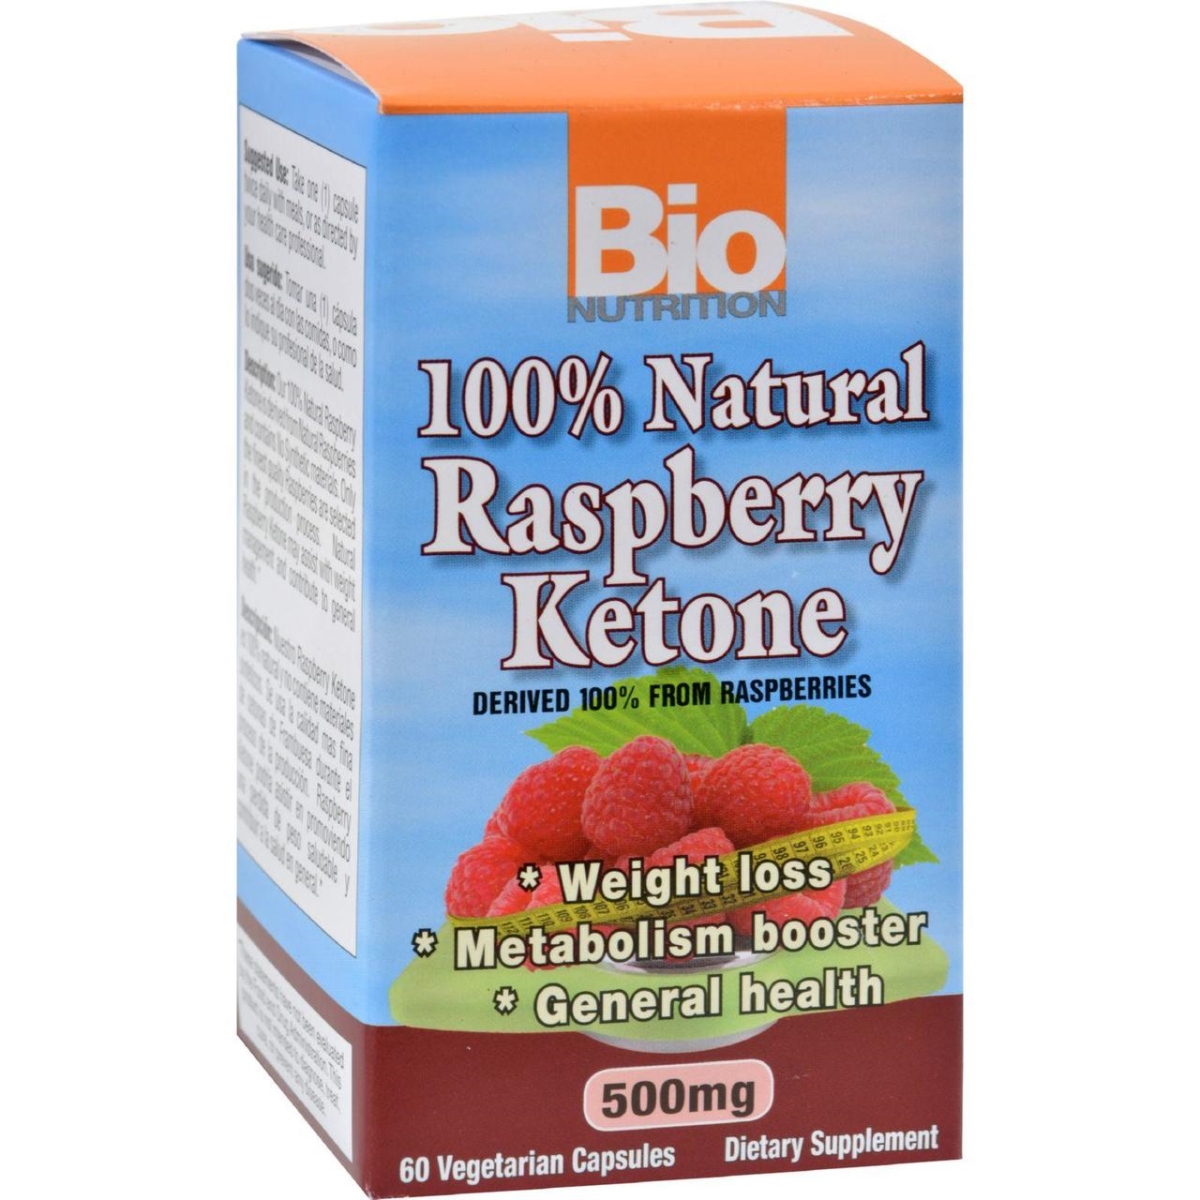 Bio Nutrition Hg1237387 500 Mg Raspberry Keytones - 60 Count